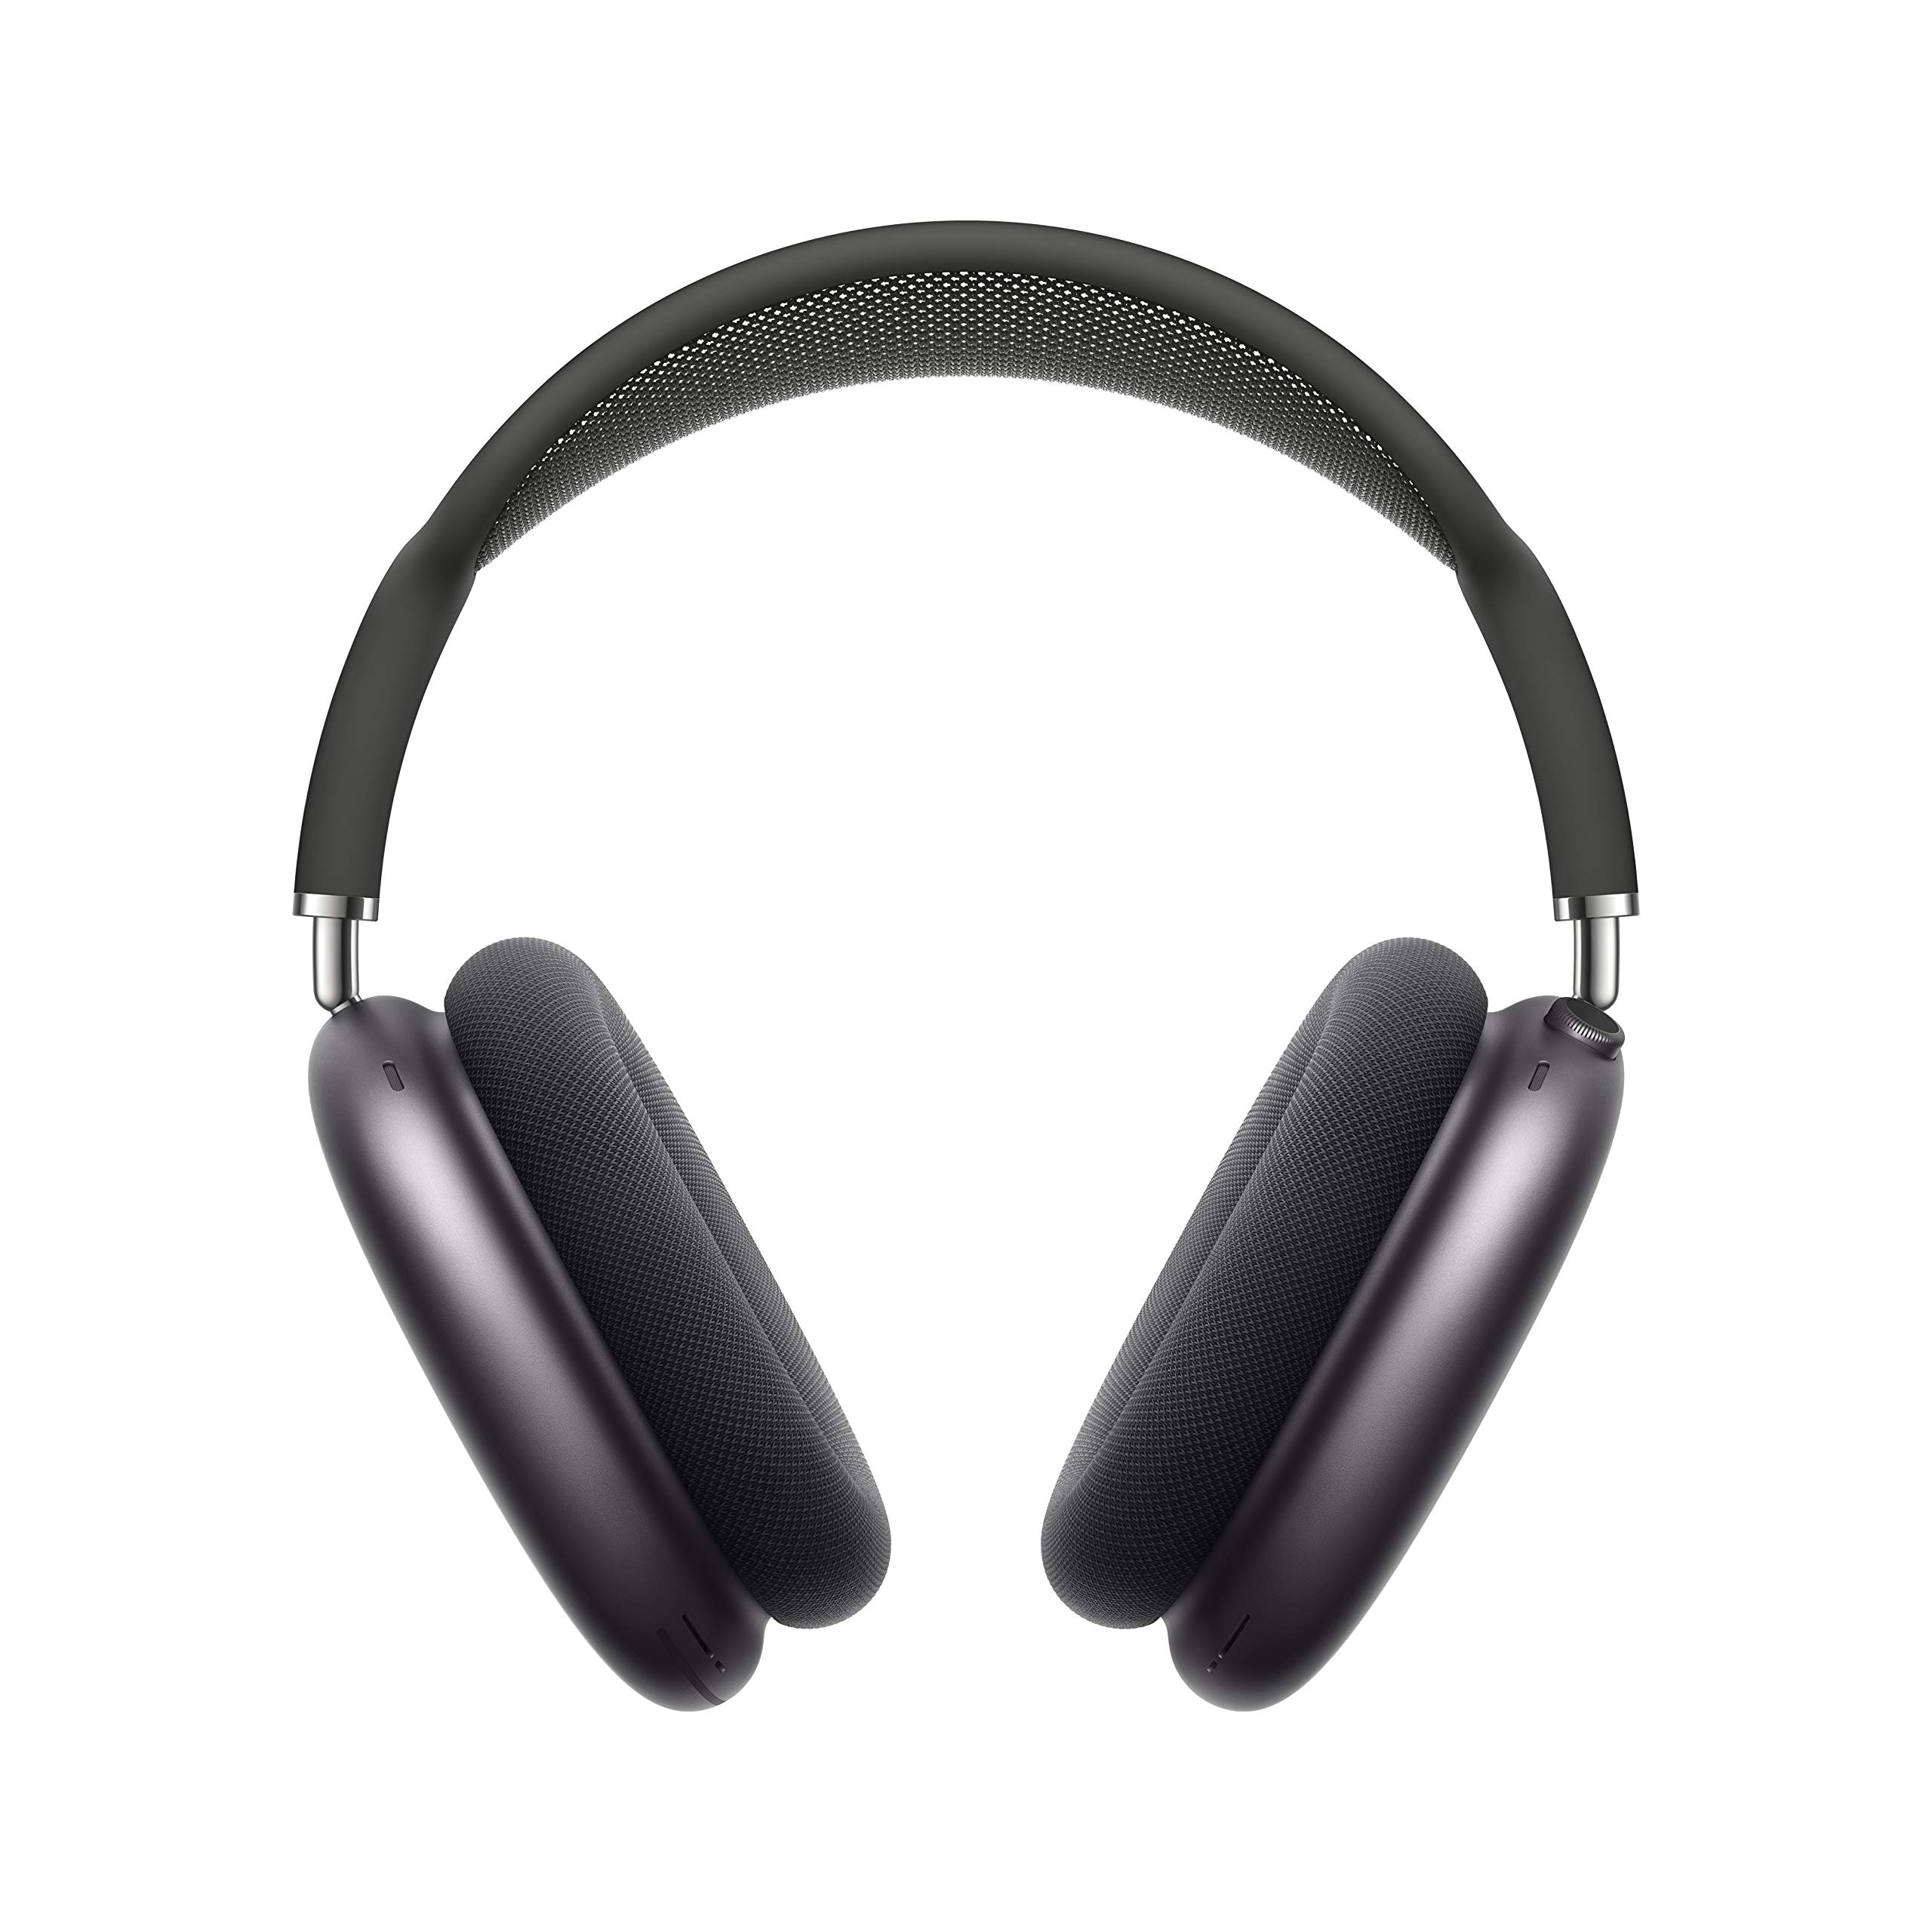 Apple AirPods Max 无线耳罩式耳机。主动降噪、透明模式、空间音频、用于音量控制的数字表冠。 i...